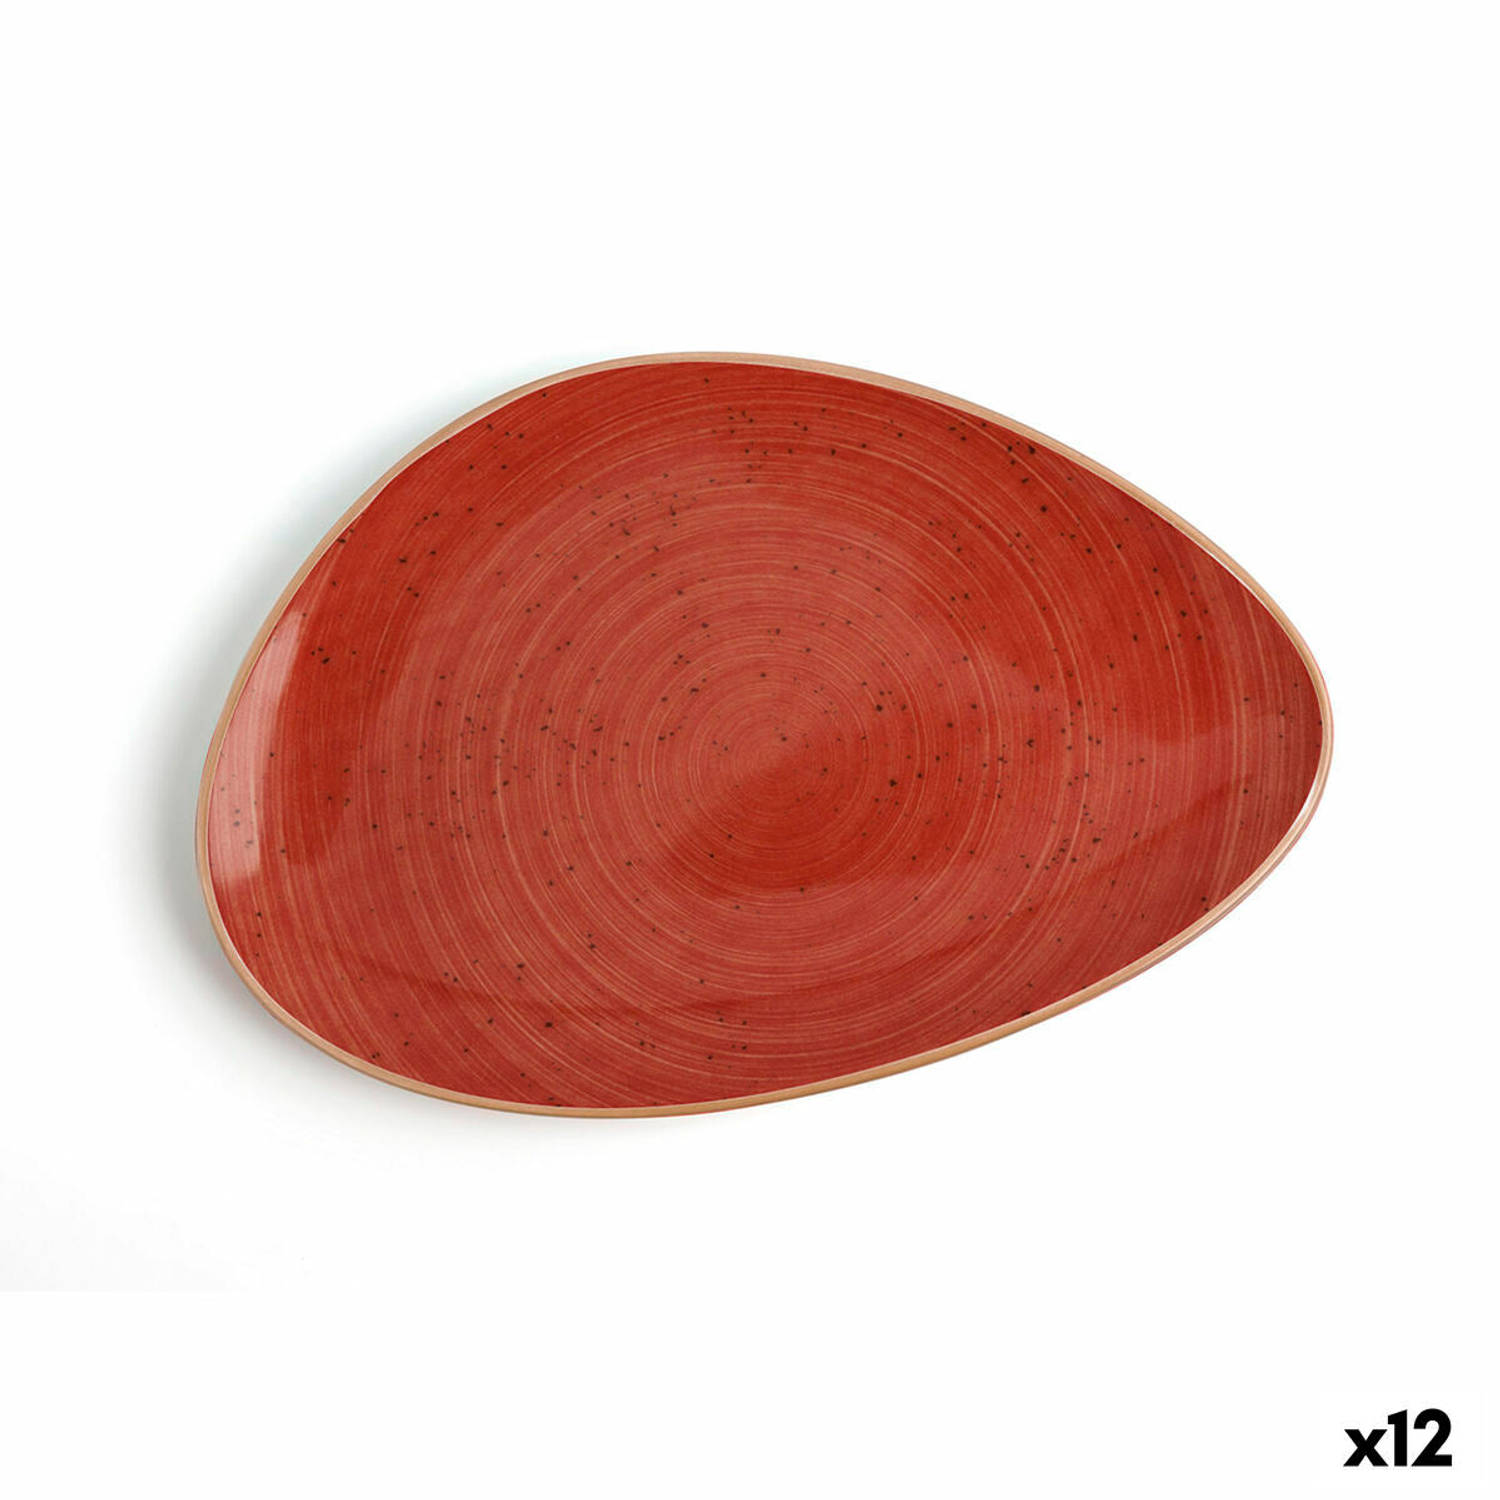 Eetbord Ariane Terra Driehoekig Rood Keramisch Ø 21 cm (12 Stuks)